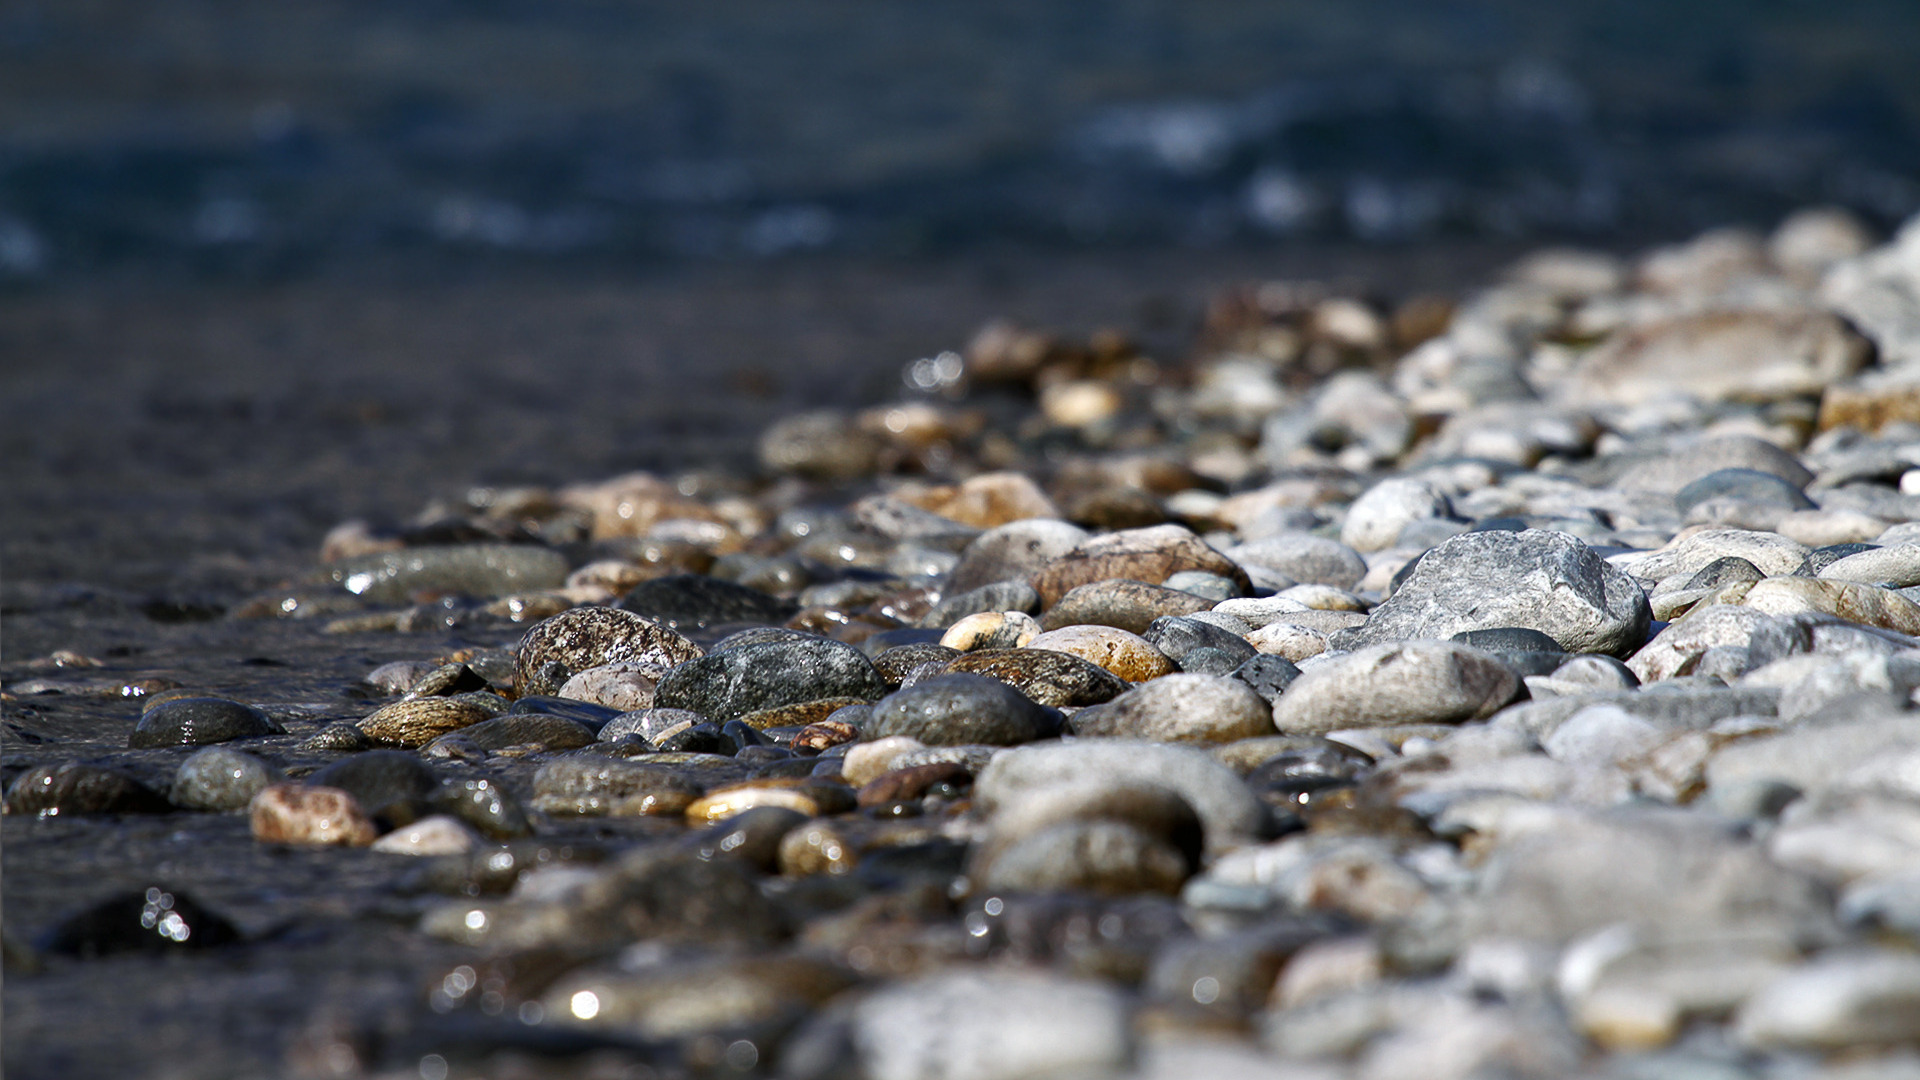 بک گراند زیبا از سنگ های کنار آب با کیفیت فوق العاده 